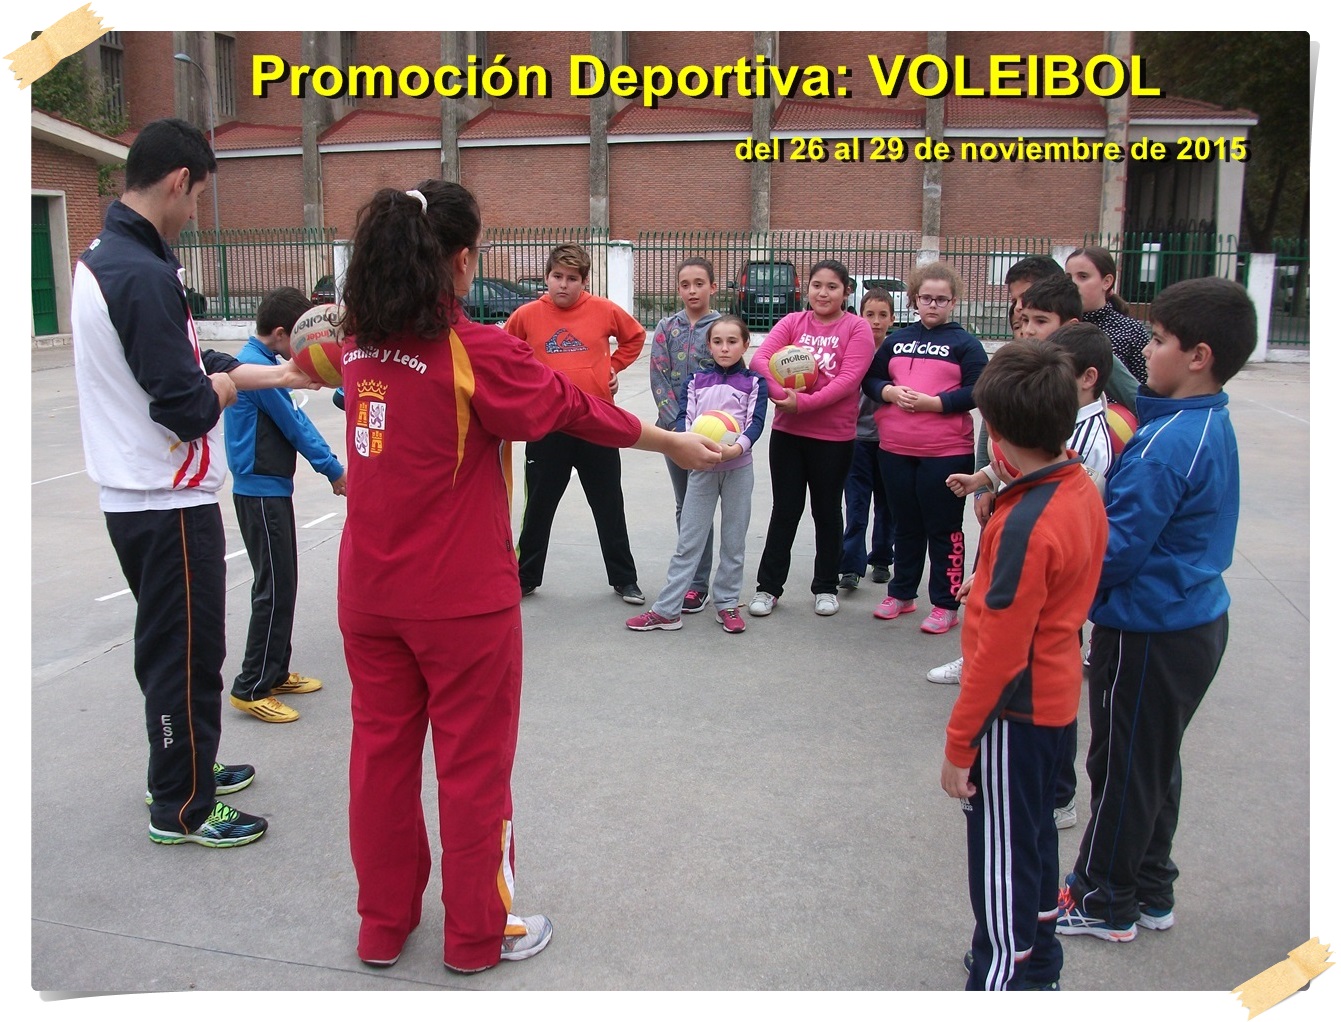 Prom Deportiva: Voleibol nov15